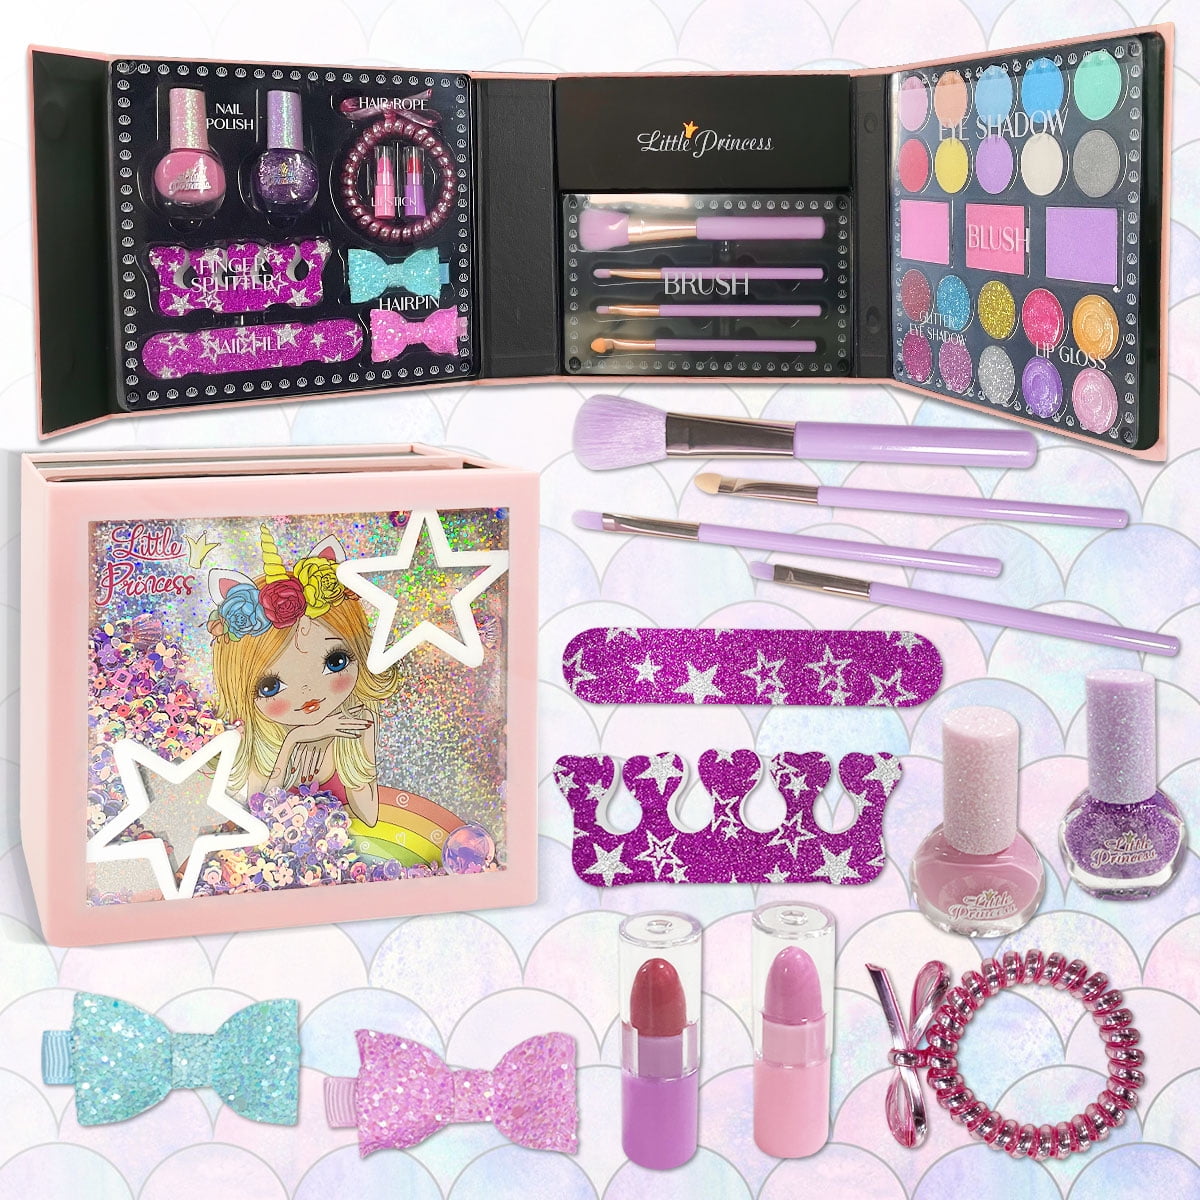  54 Pcs Kids Makeup Kit for Girls, Princess Real